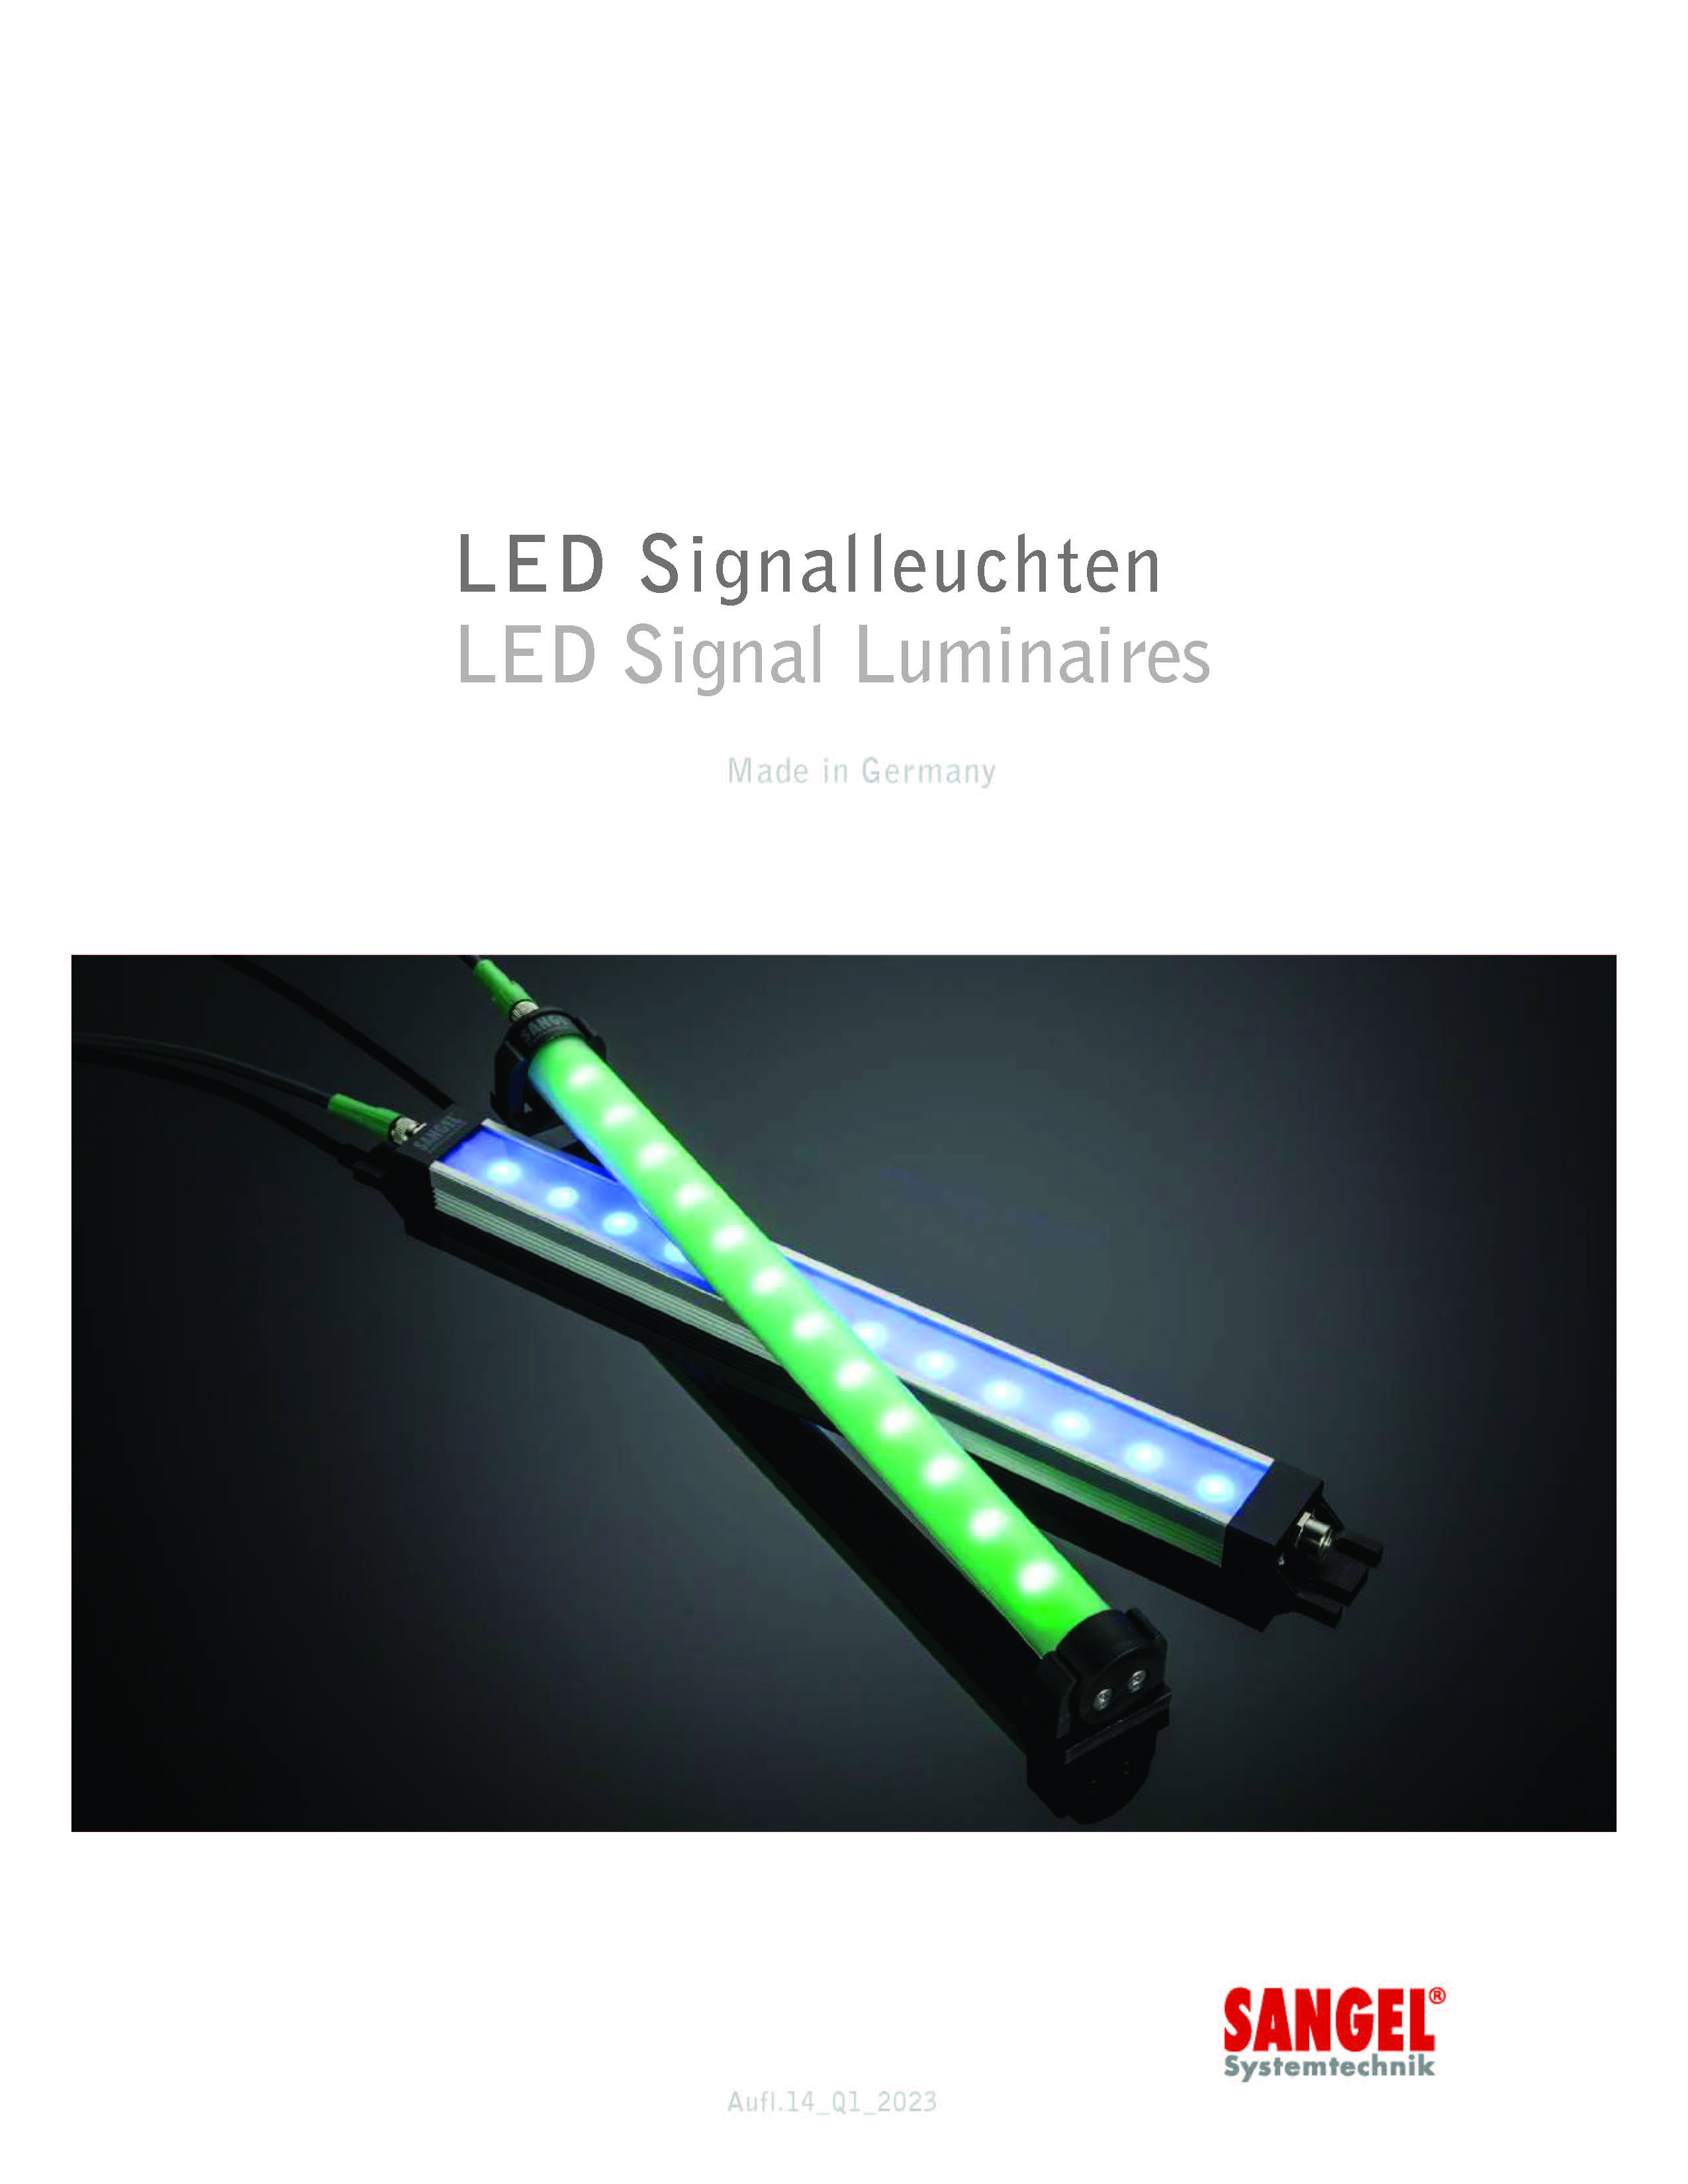 LED Signal Luminaires Catalog